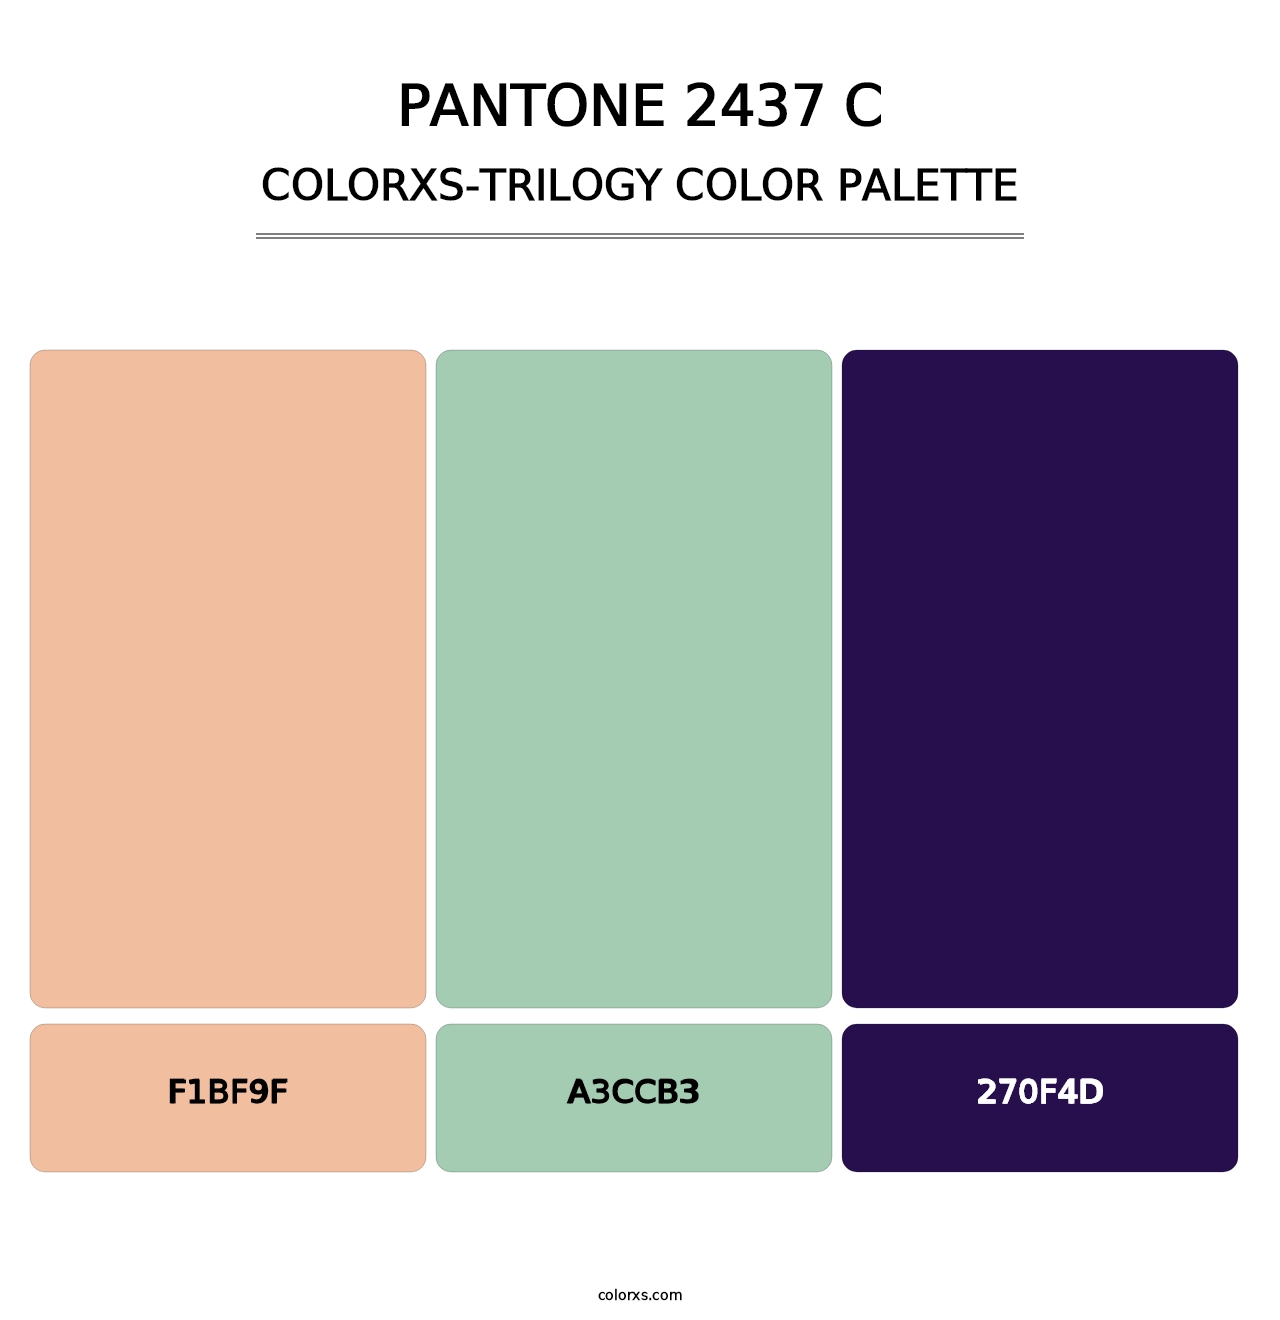 PANTONE 2437 C - Colorxs Trilogy Palette